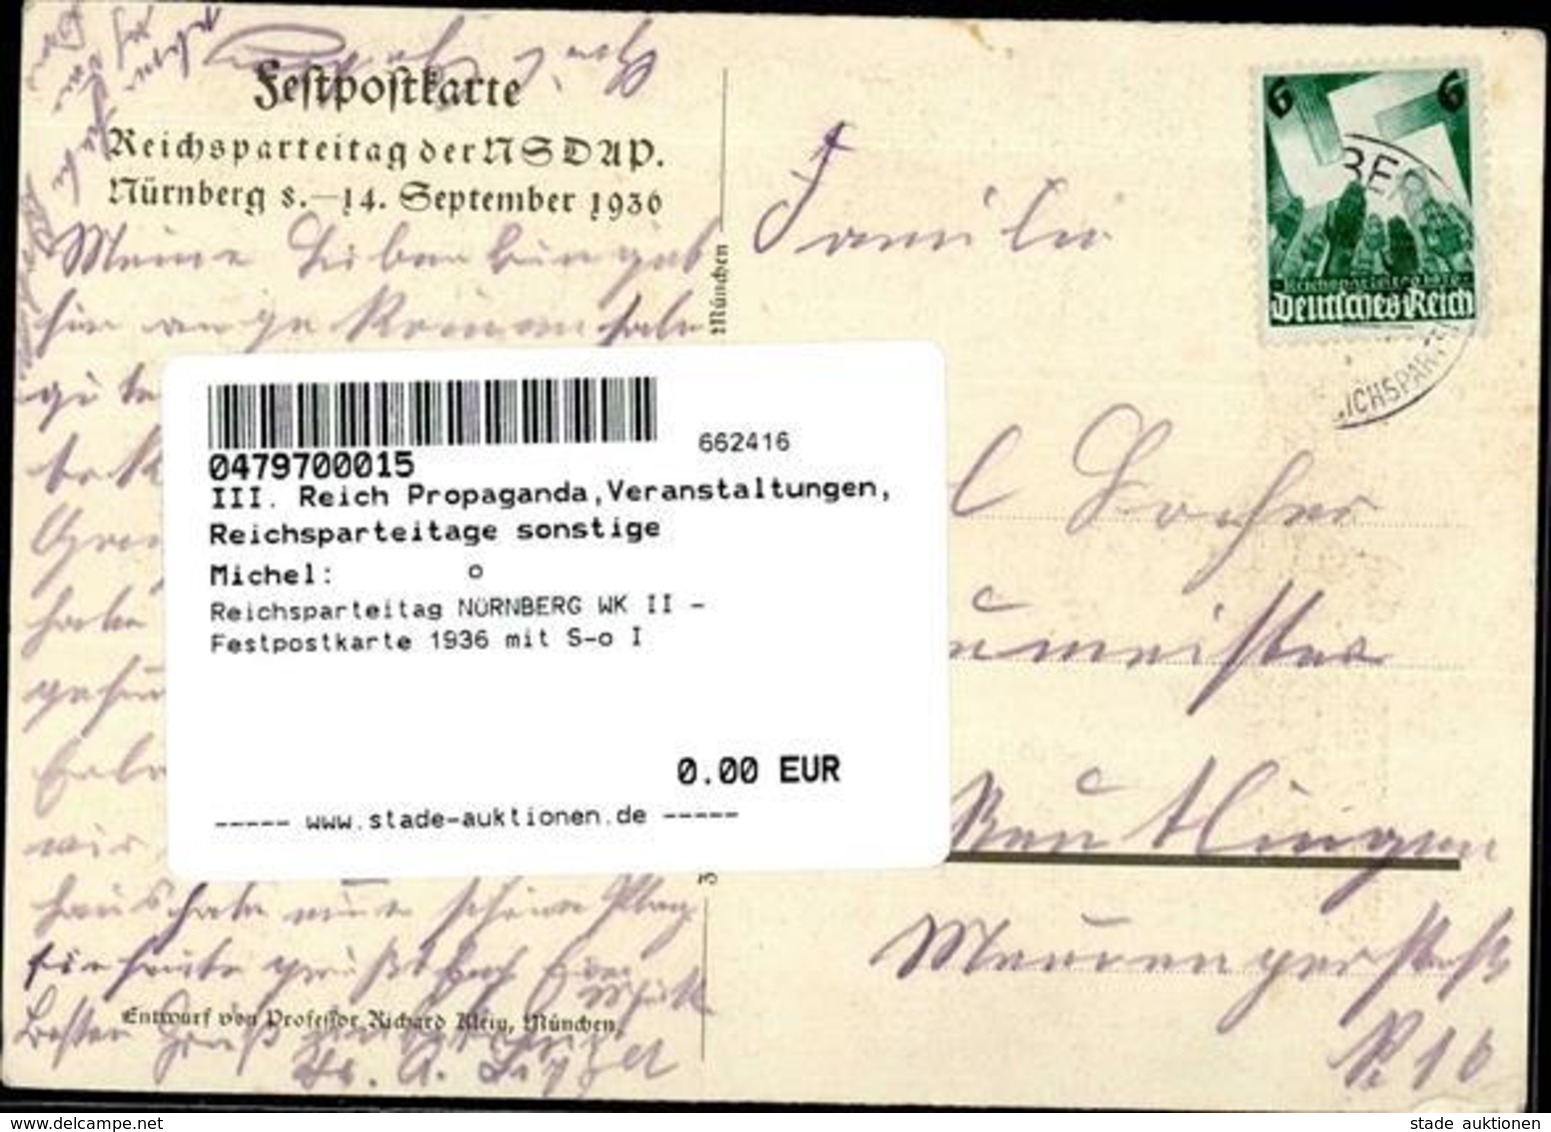 Reichsparteitag NÜRNBERG WK II - Festpostkarte 1936 Mit S-o I - War 1939-45